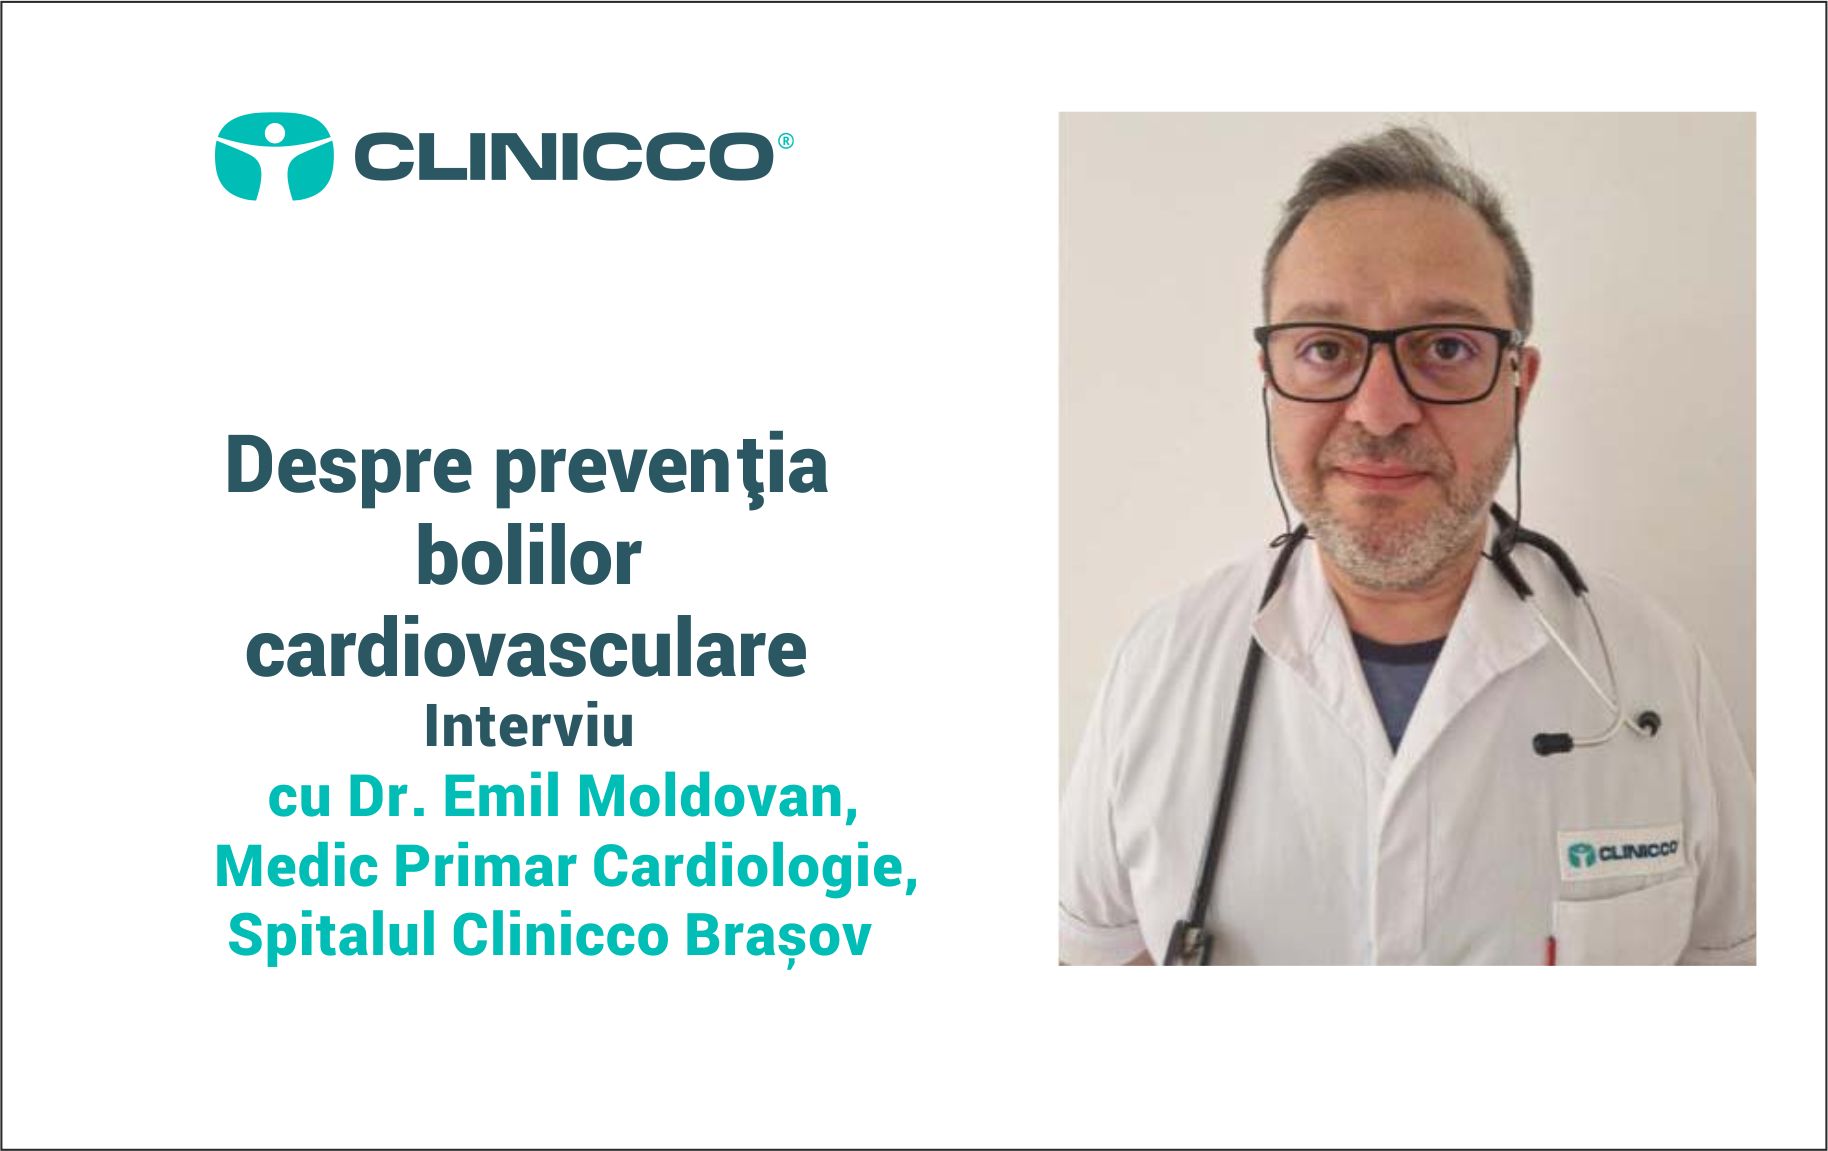 Despre prevenția bolilor cardiovasculare cu Dr. Emil Moldovan